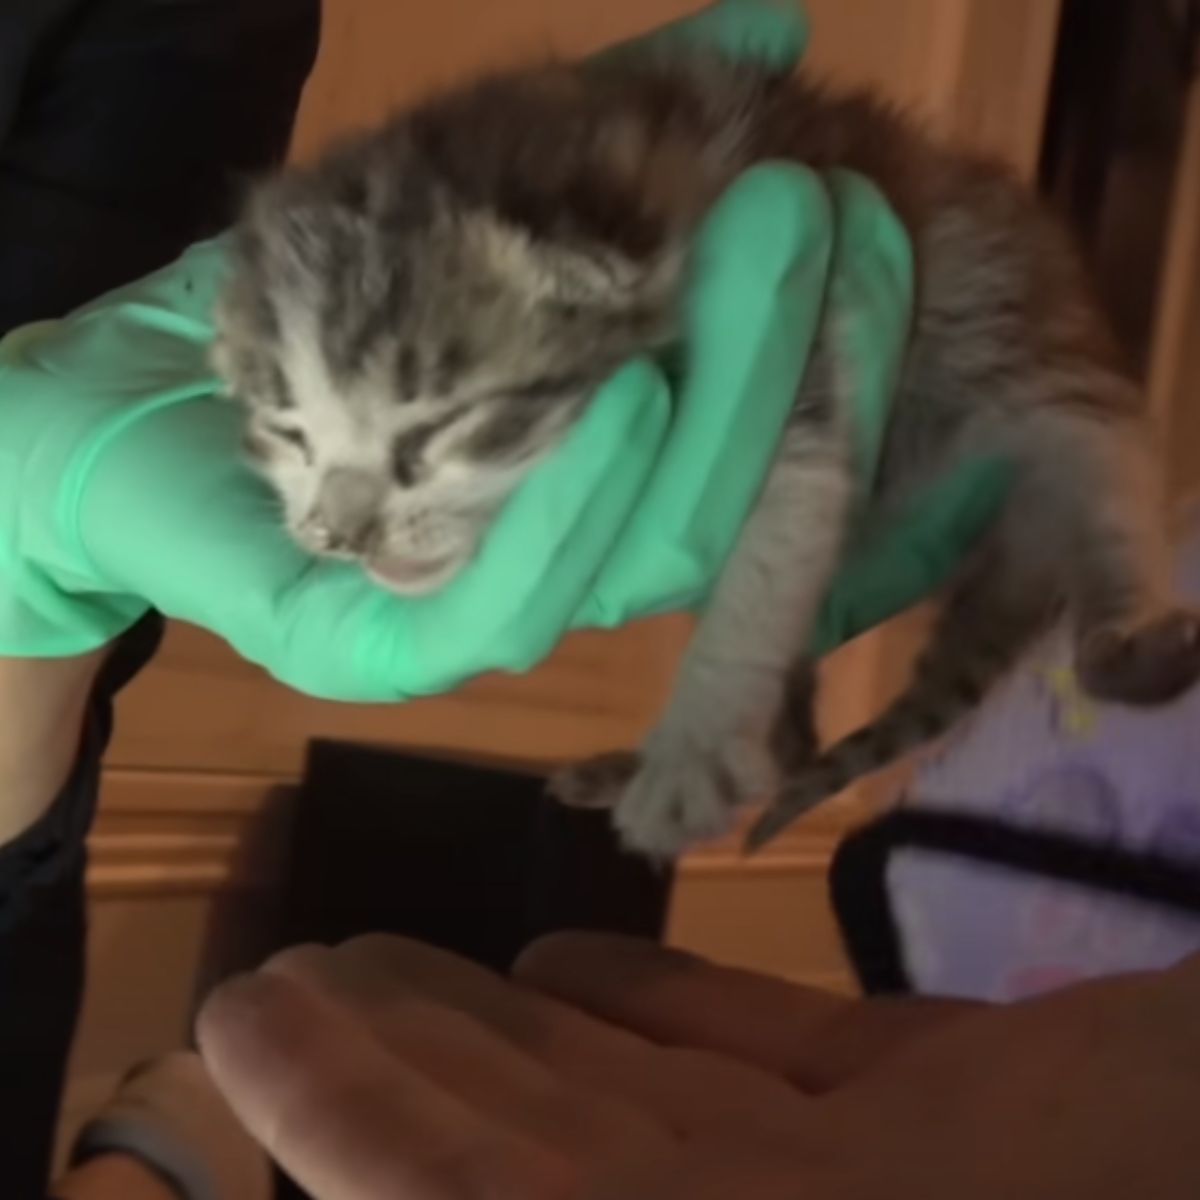 rescuing kittens